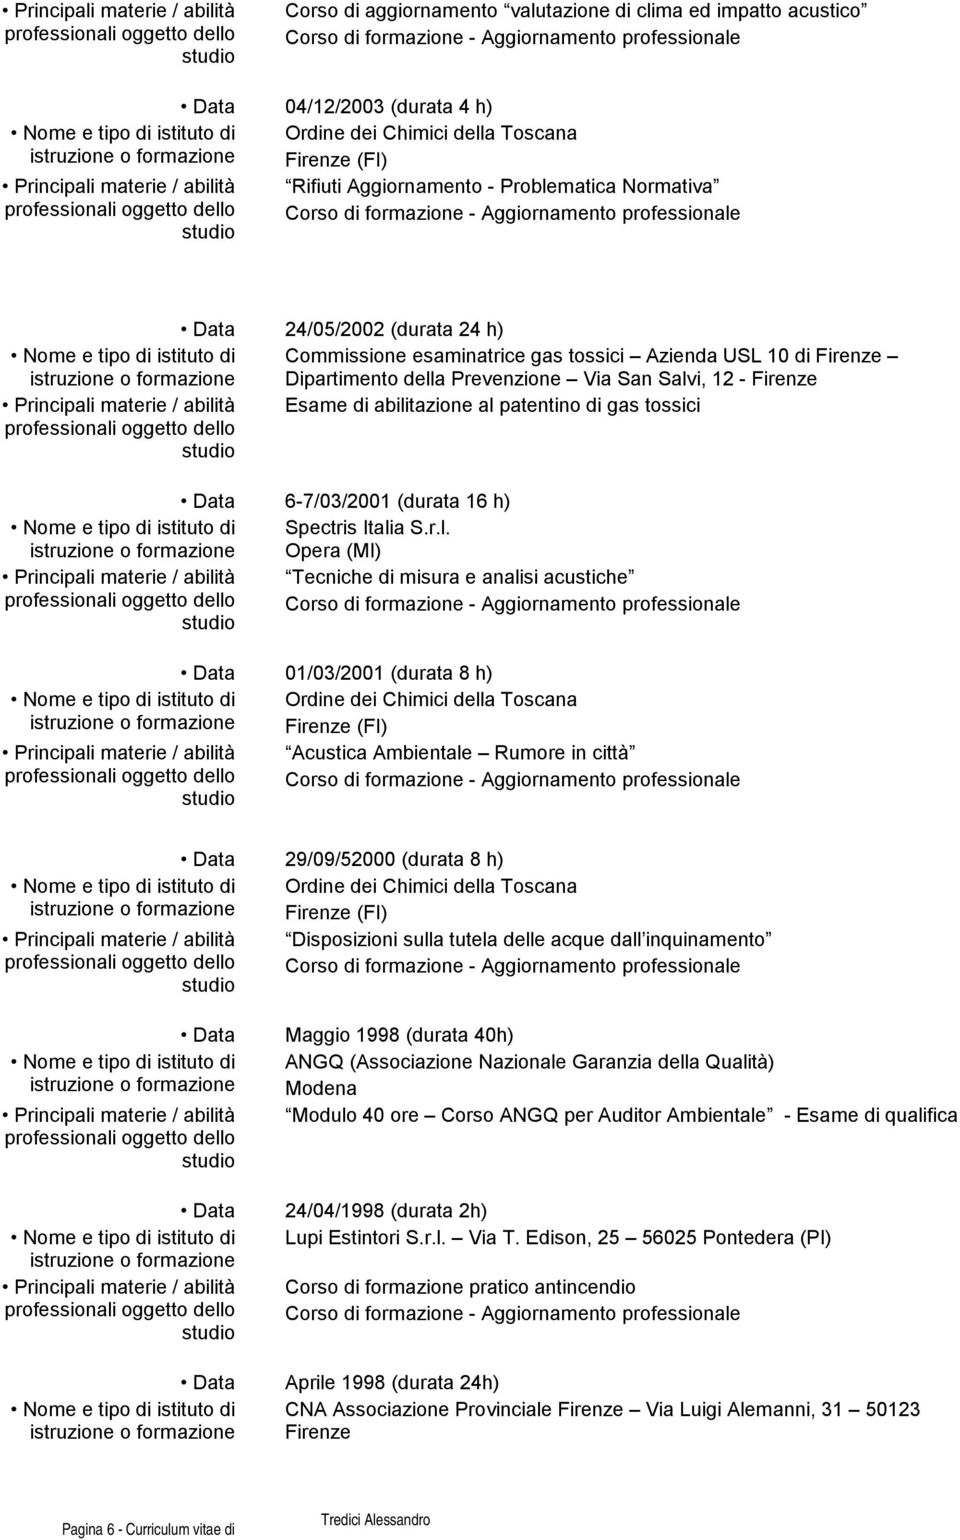 Dipartiment della Prevenzine Via San Salvi, 12 - Firenze Principali materie / abilità Esame di abilitazine al patentin di gas tssici Data 6-7/03/2001 (durata 16 h) Nme e tip di istitut di Spectris